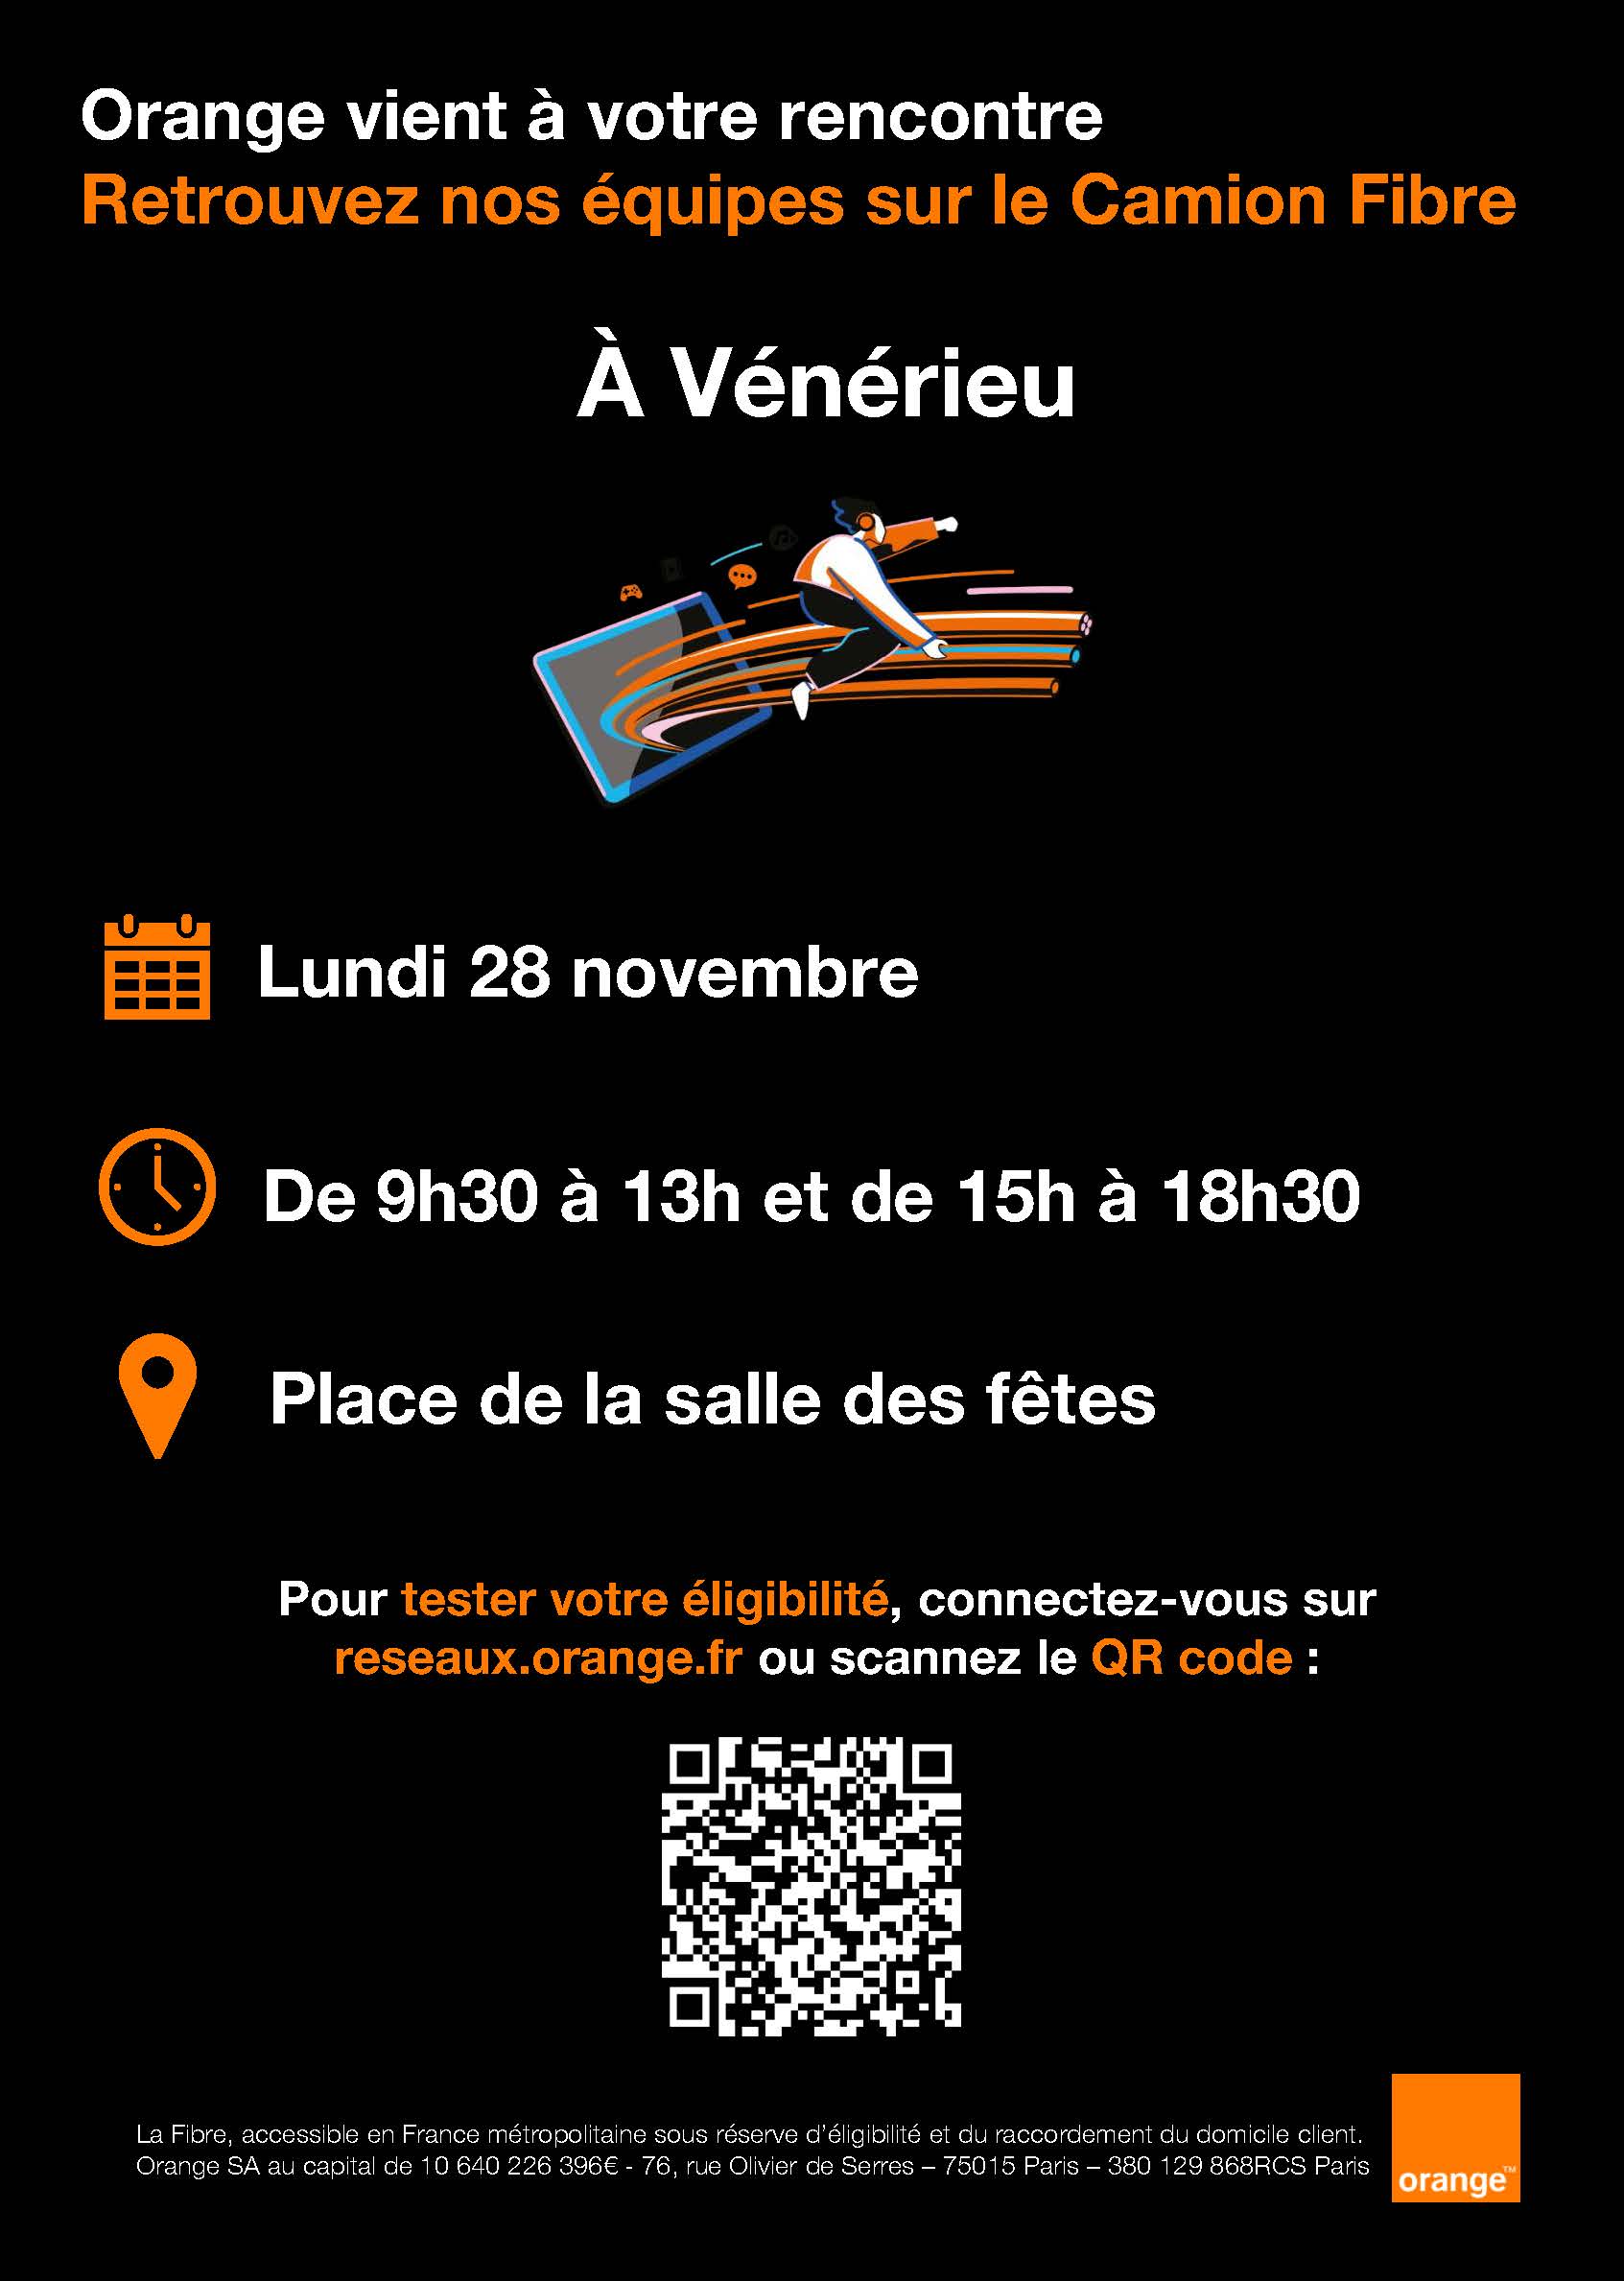 28 novembre - Vénérieu - Camion fibre.jpg